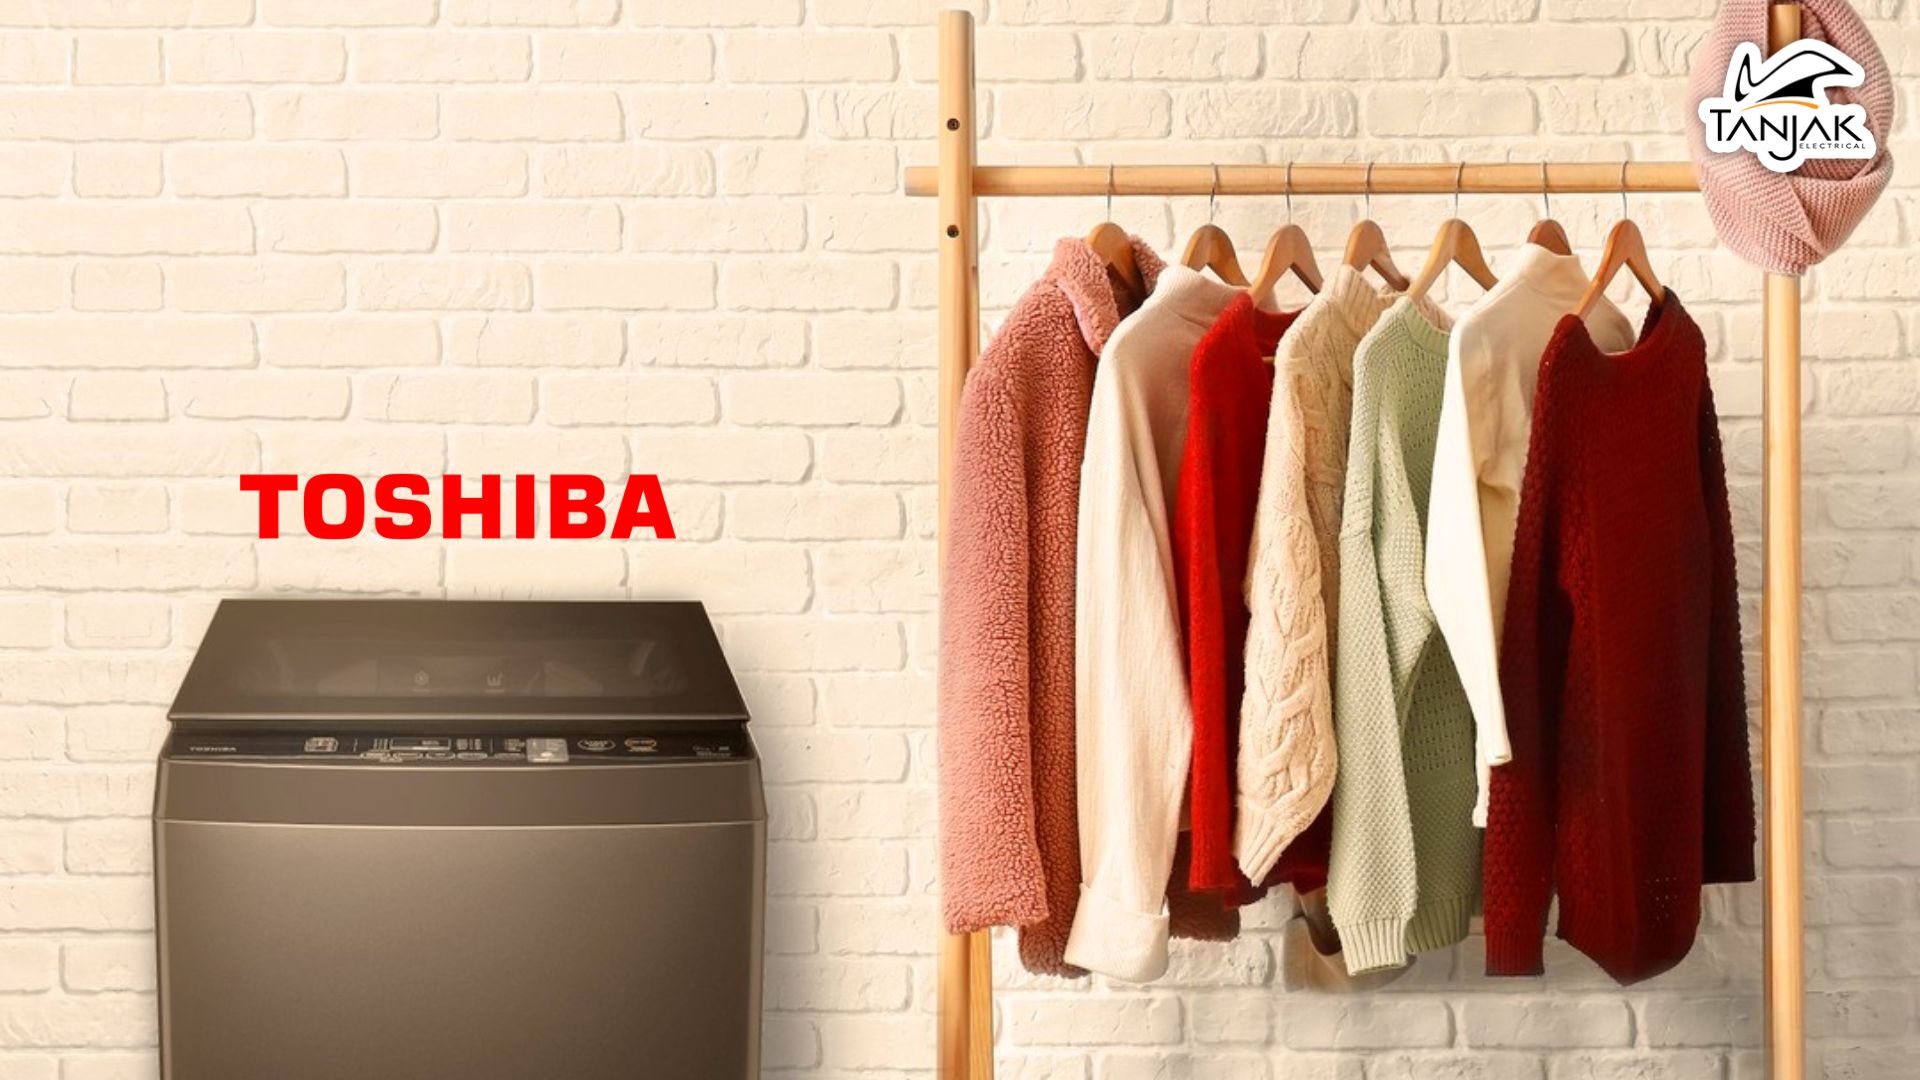 Gugurkan Tugas Basuh Anda Dengan Kuasa Mesin Cuci Toshiba AW J800AMSG yang Hebat - Tanjak Electrical